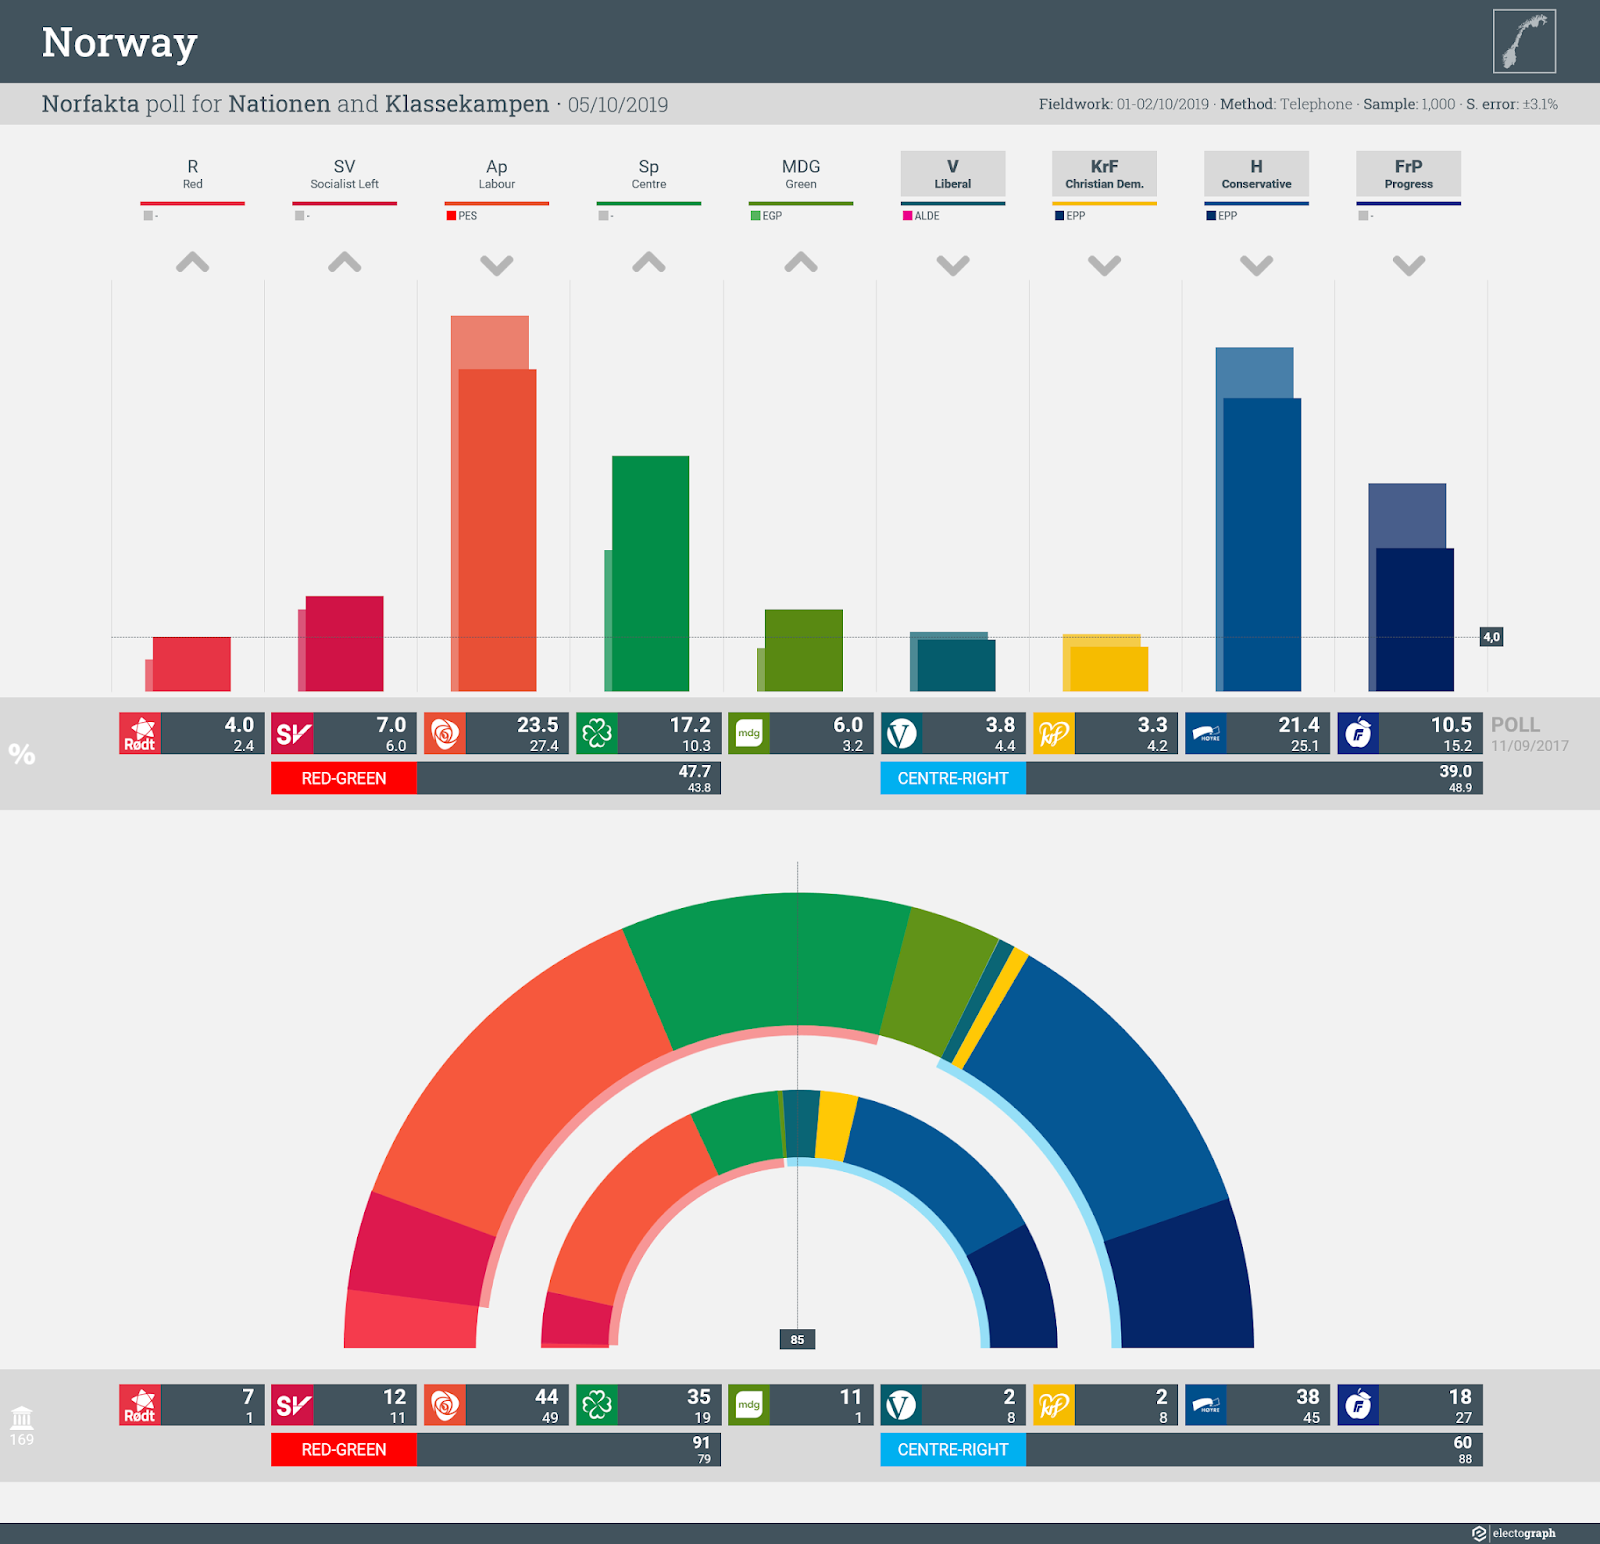 NORWAY: Norfakta poll chart for Nationen and Klassekampen, 5 October 2019